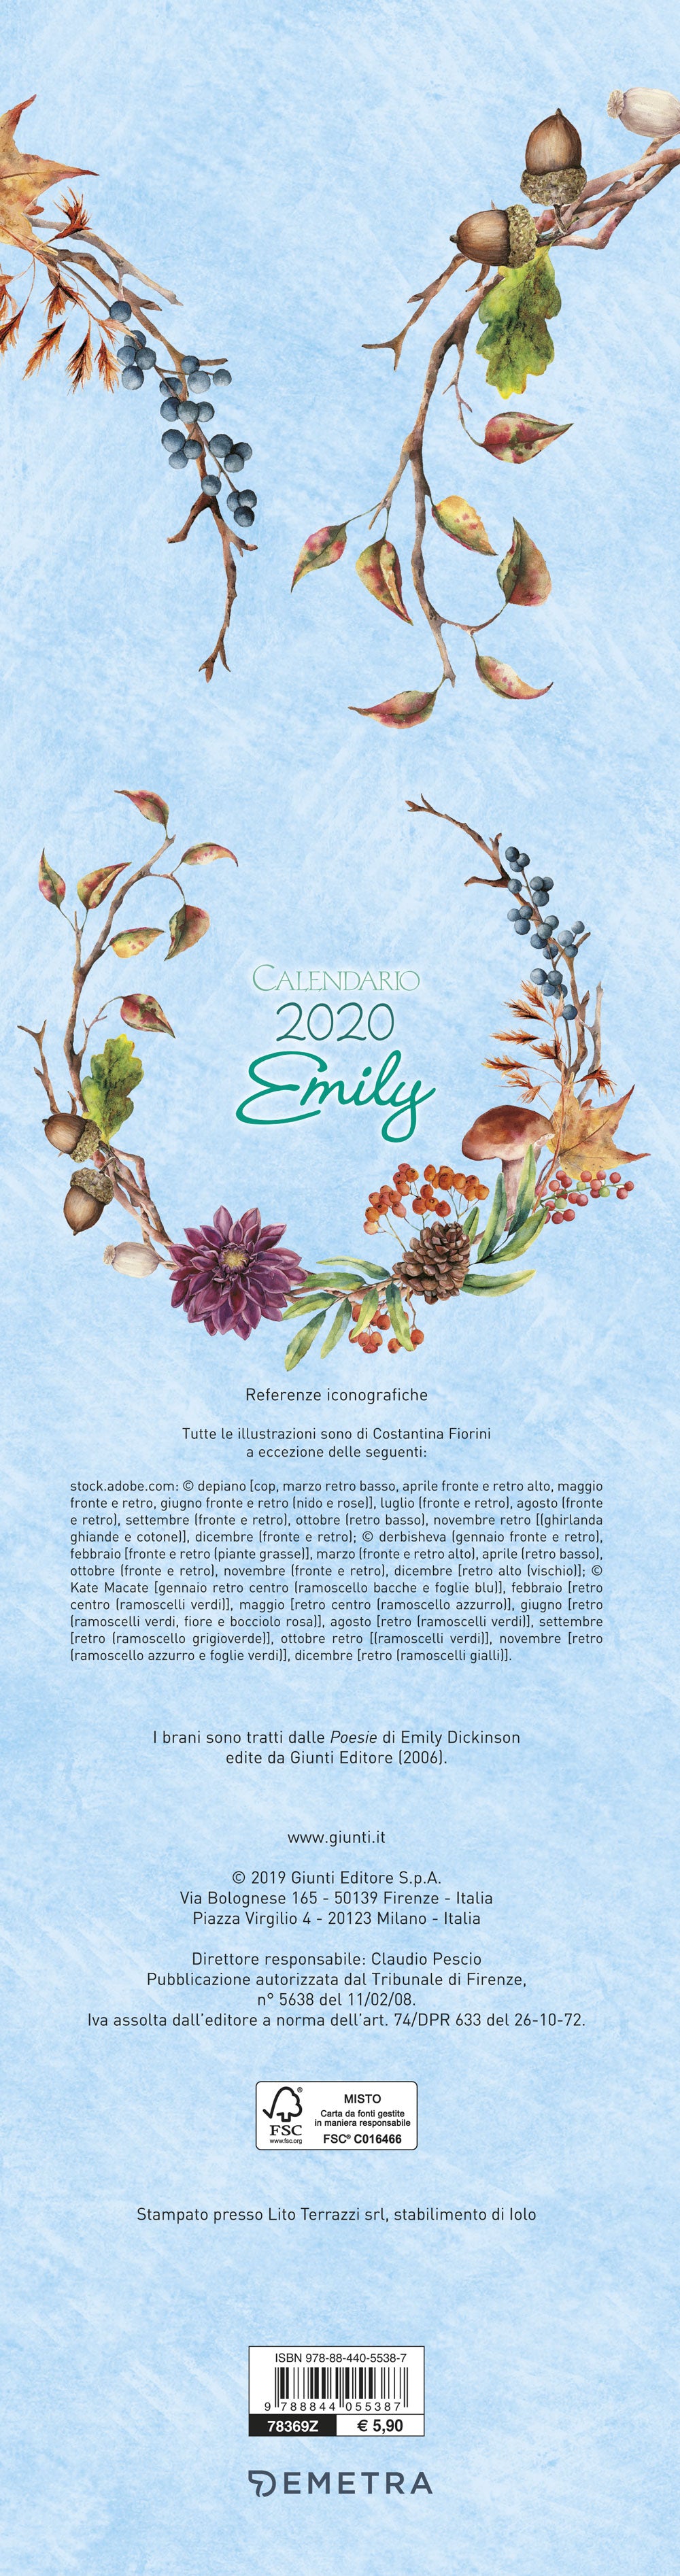 Calendario Emily stretto 2020